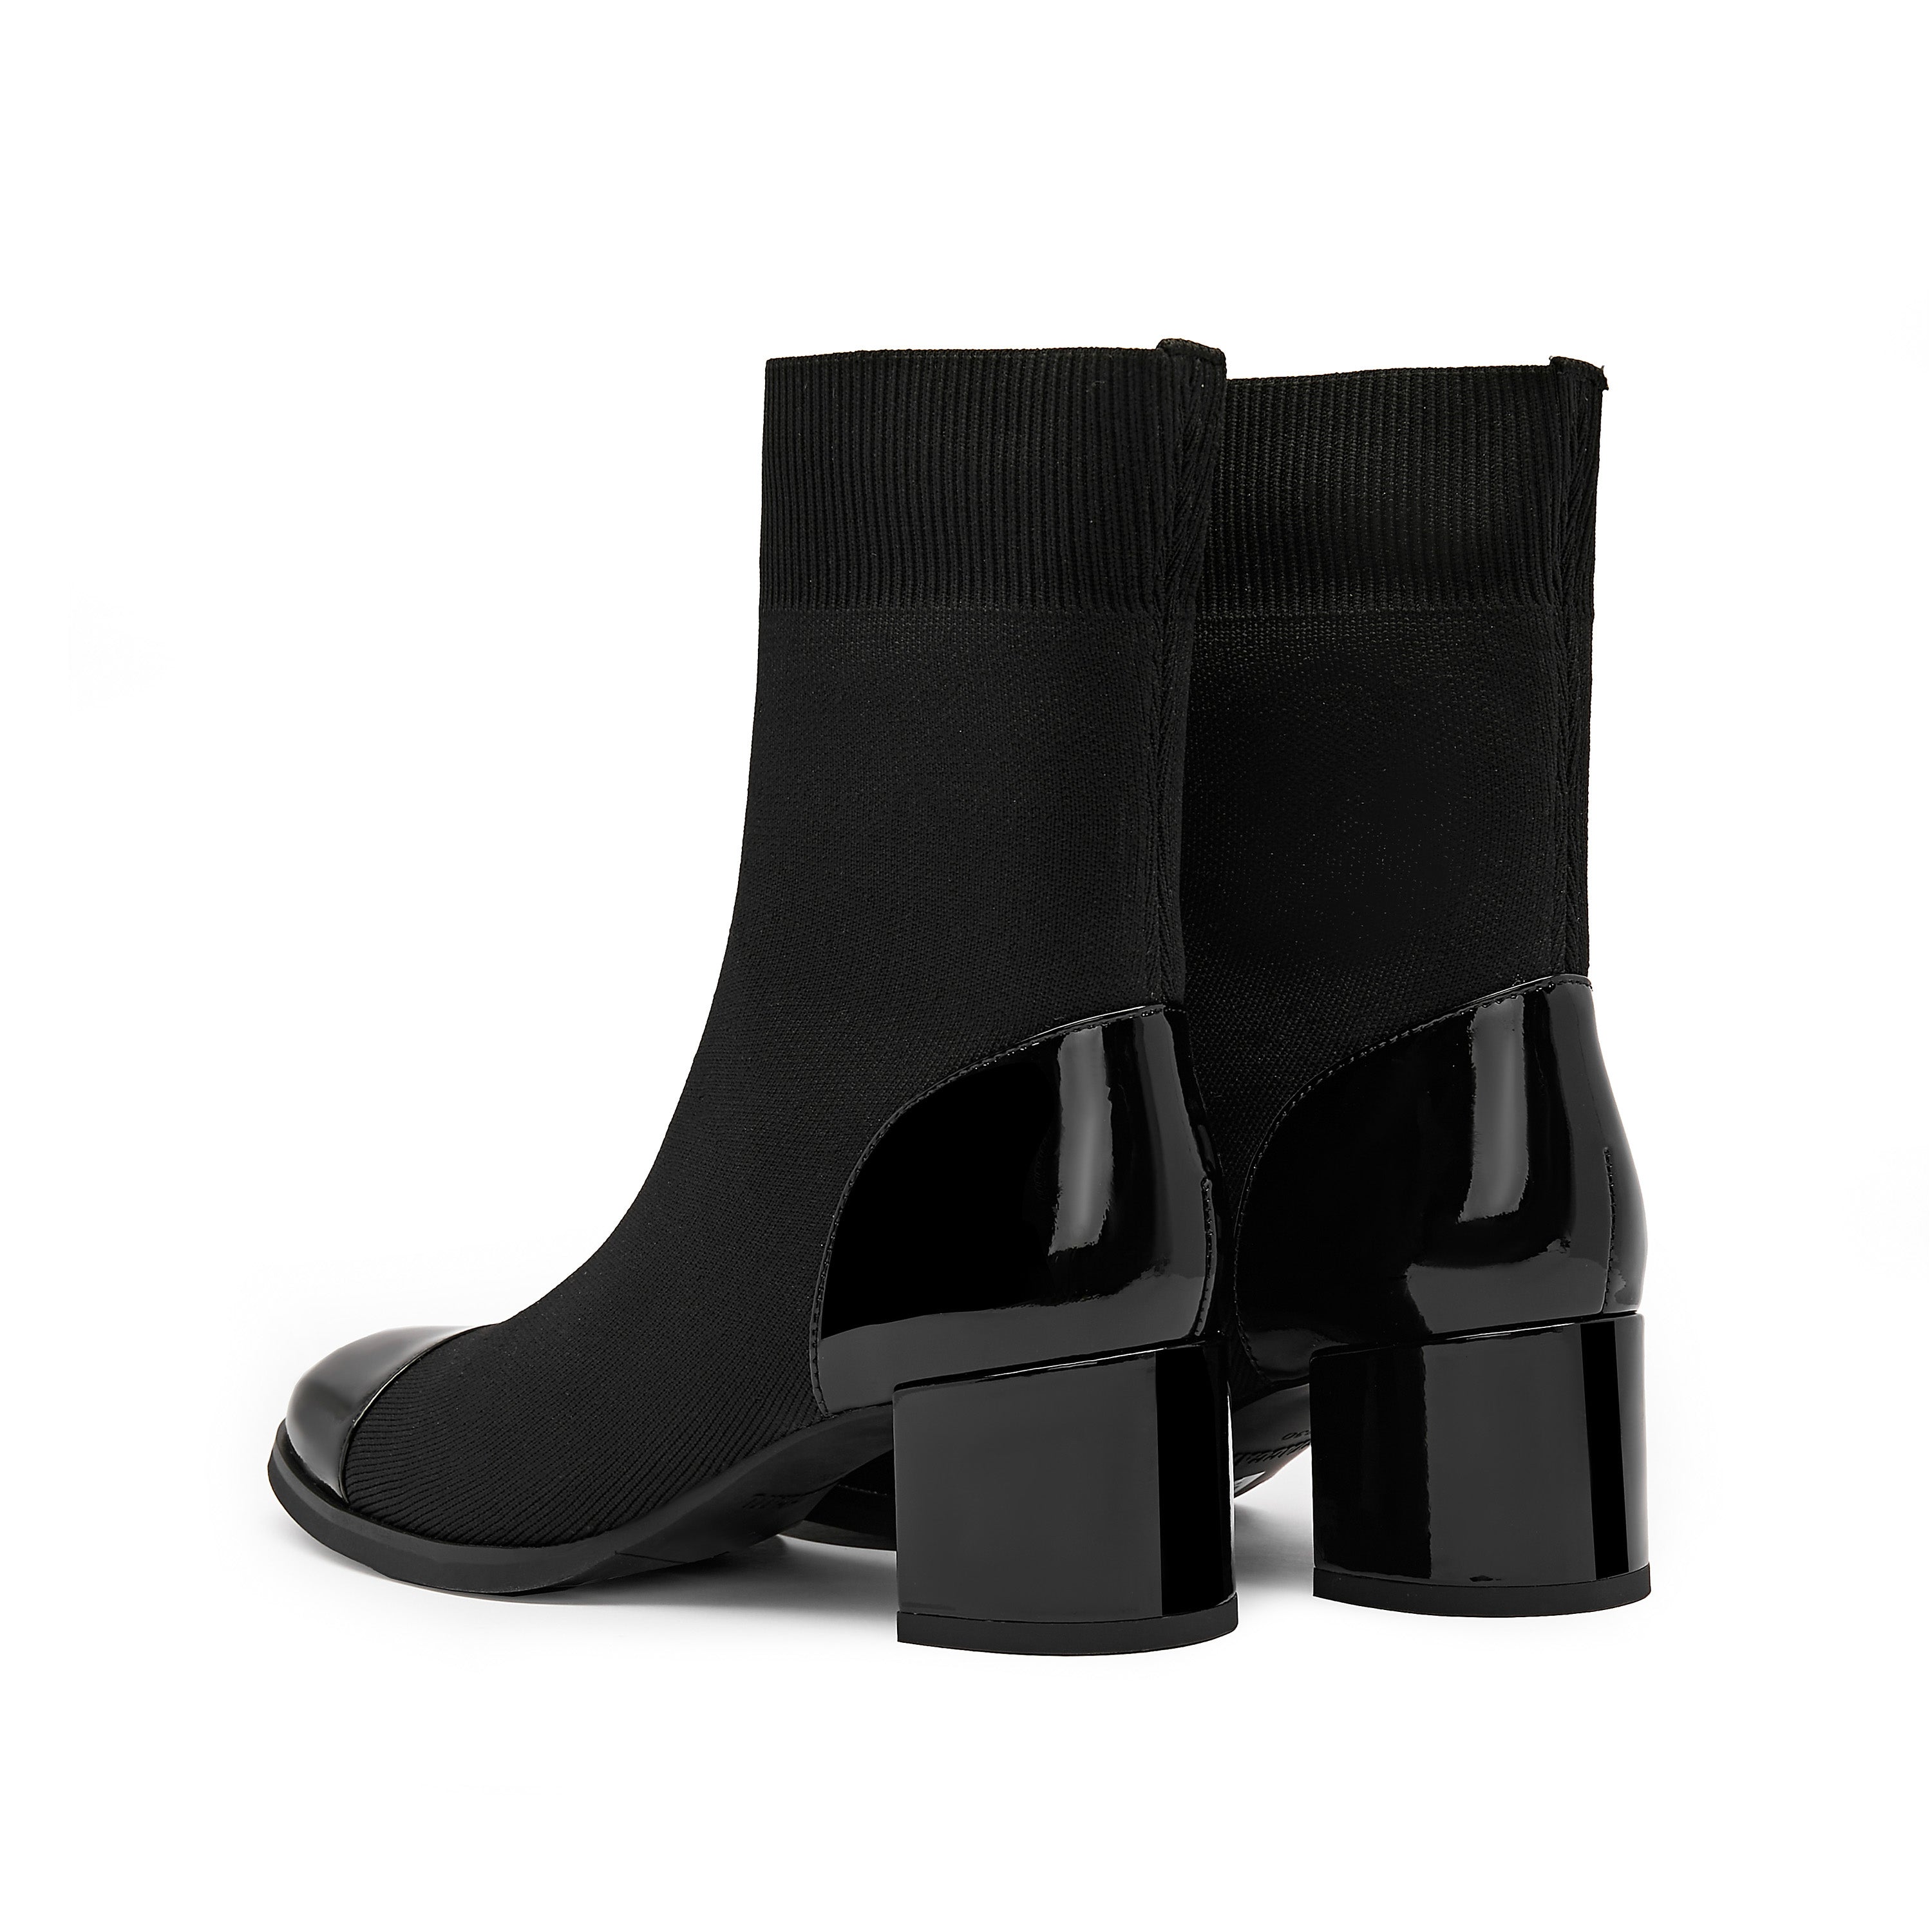 Patent Toe Cap Black Sock Boots